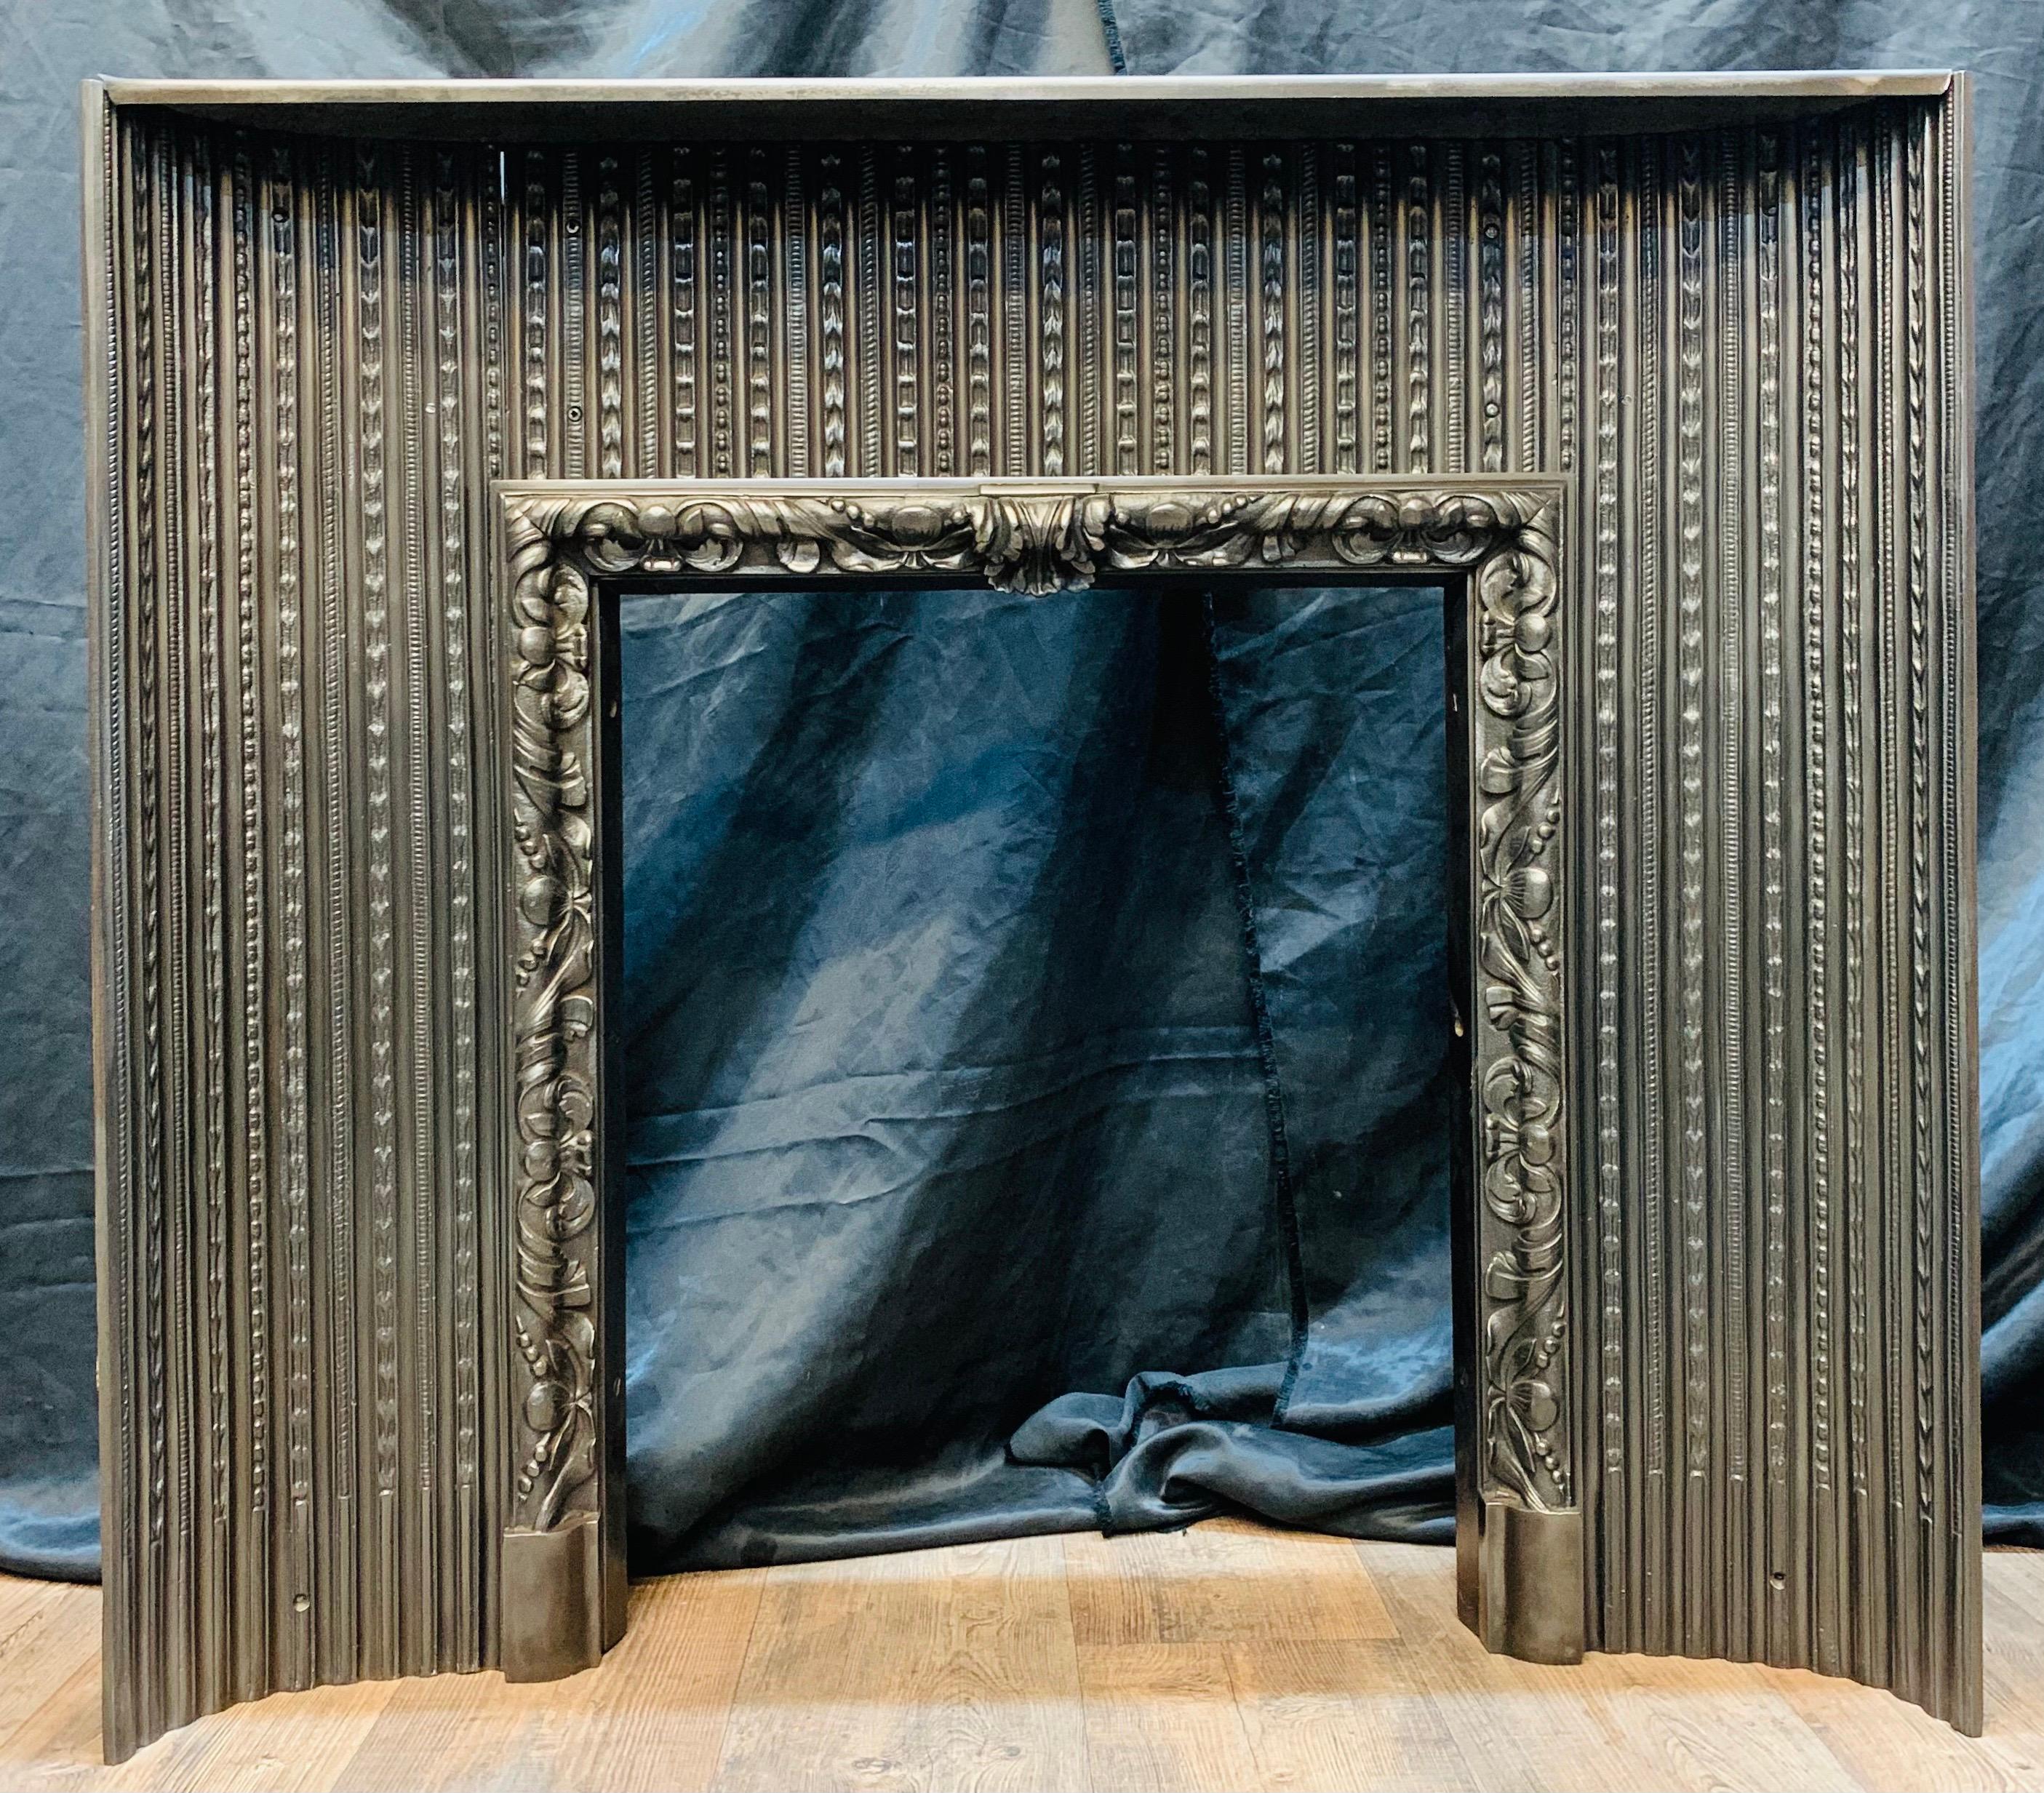 Ein gusseiserner Kamineinsatz aus dem frühen 19. Jahrhundert von hervorragender Qualität. Konvexe, gerippte Innenwände verbinden sich mit einem zentralen, auf Fußblöcken ruhenden Feuerrahmen mit Akanthusblättern. Graphitpoliert, um die Qualität der